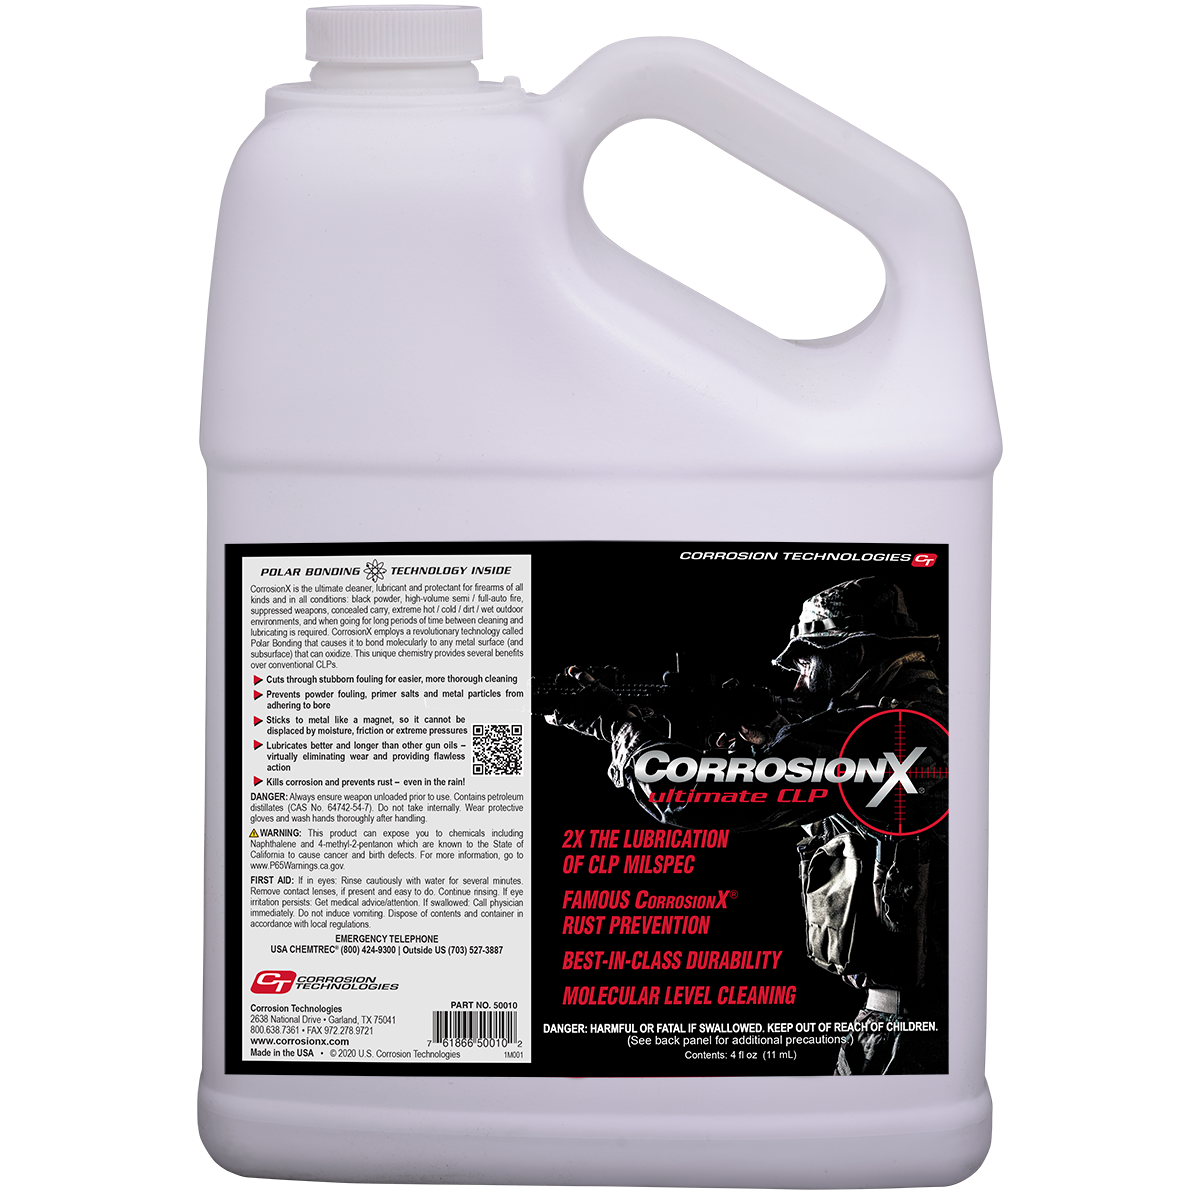 CorrosionX Ultimate CLP limpiador lubricante y protector para armas de fuego